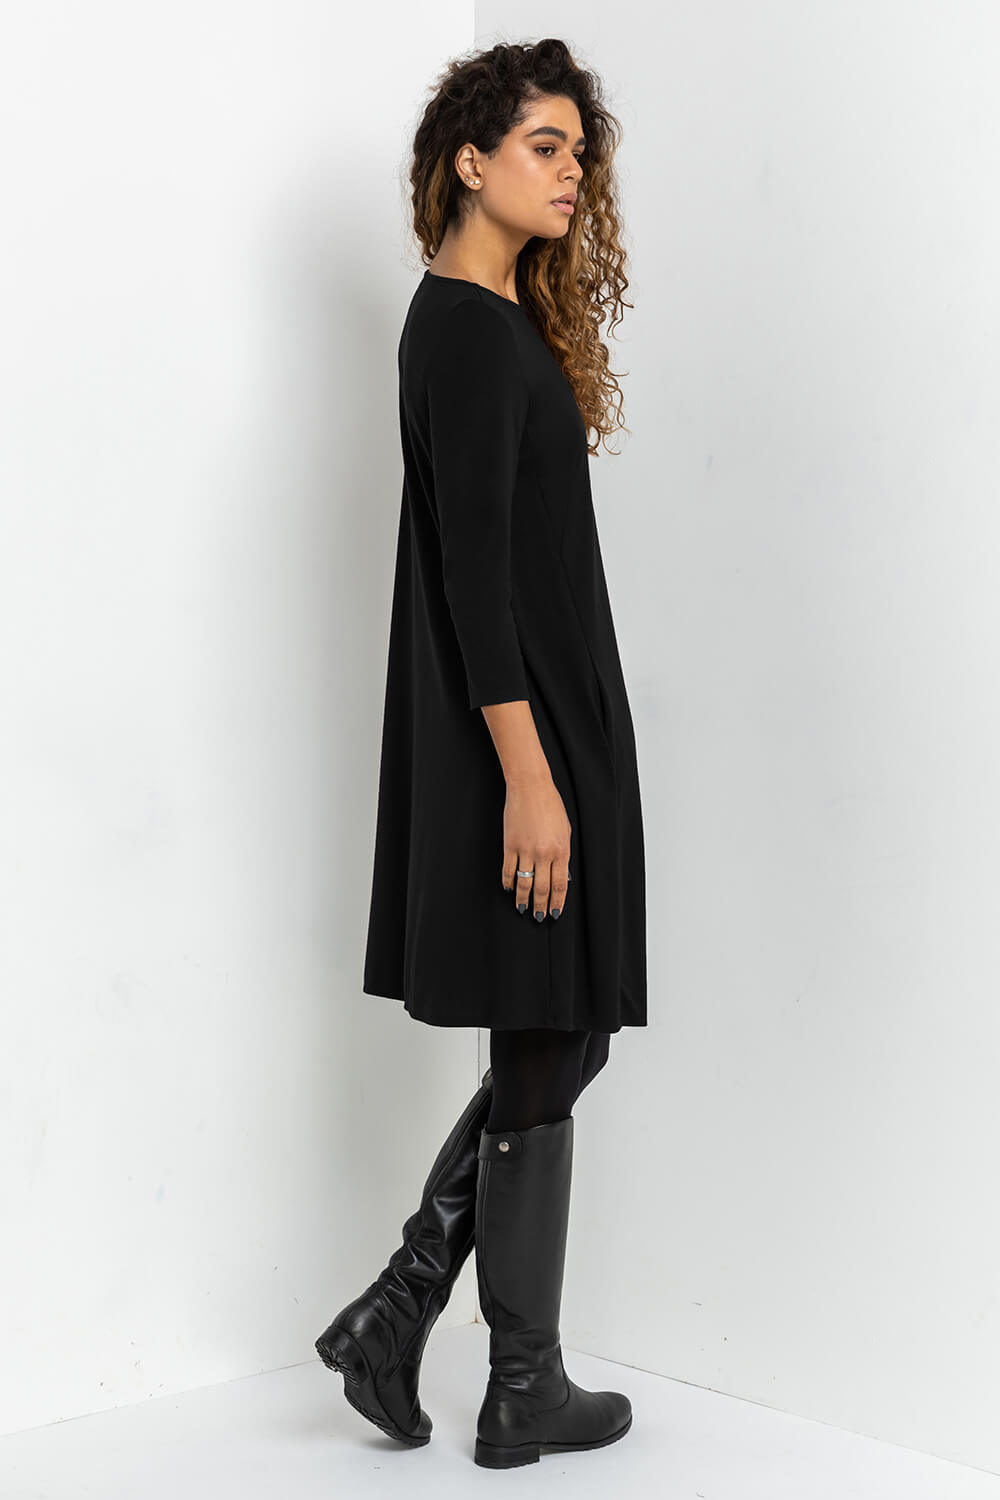 Black A-Line Pocket Detail Swing Dress, Image 3 of 5